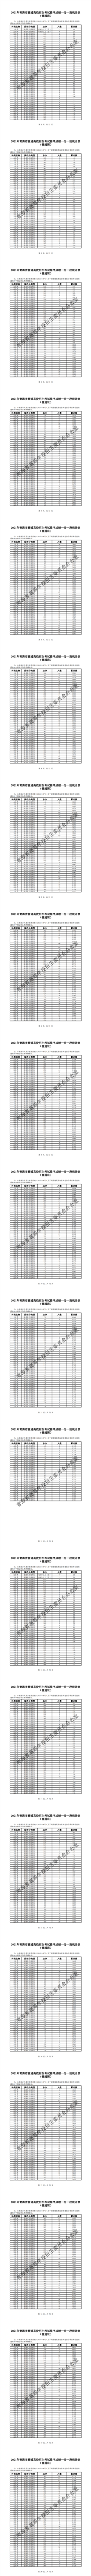 附件1：2021年青海省普通高校招生考试排序成绩一分一段统计表（普通班）_0.png